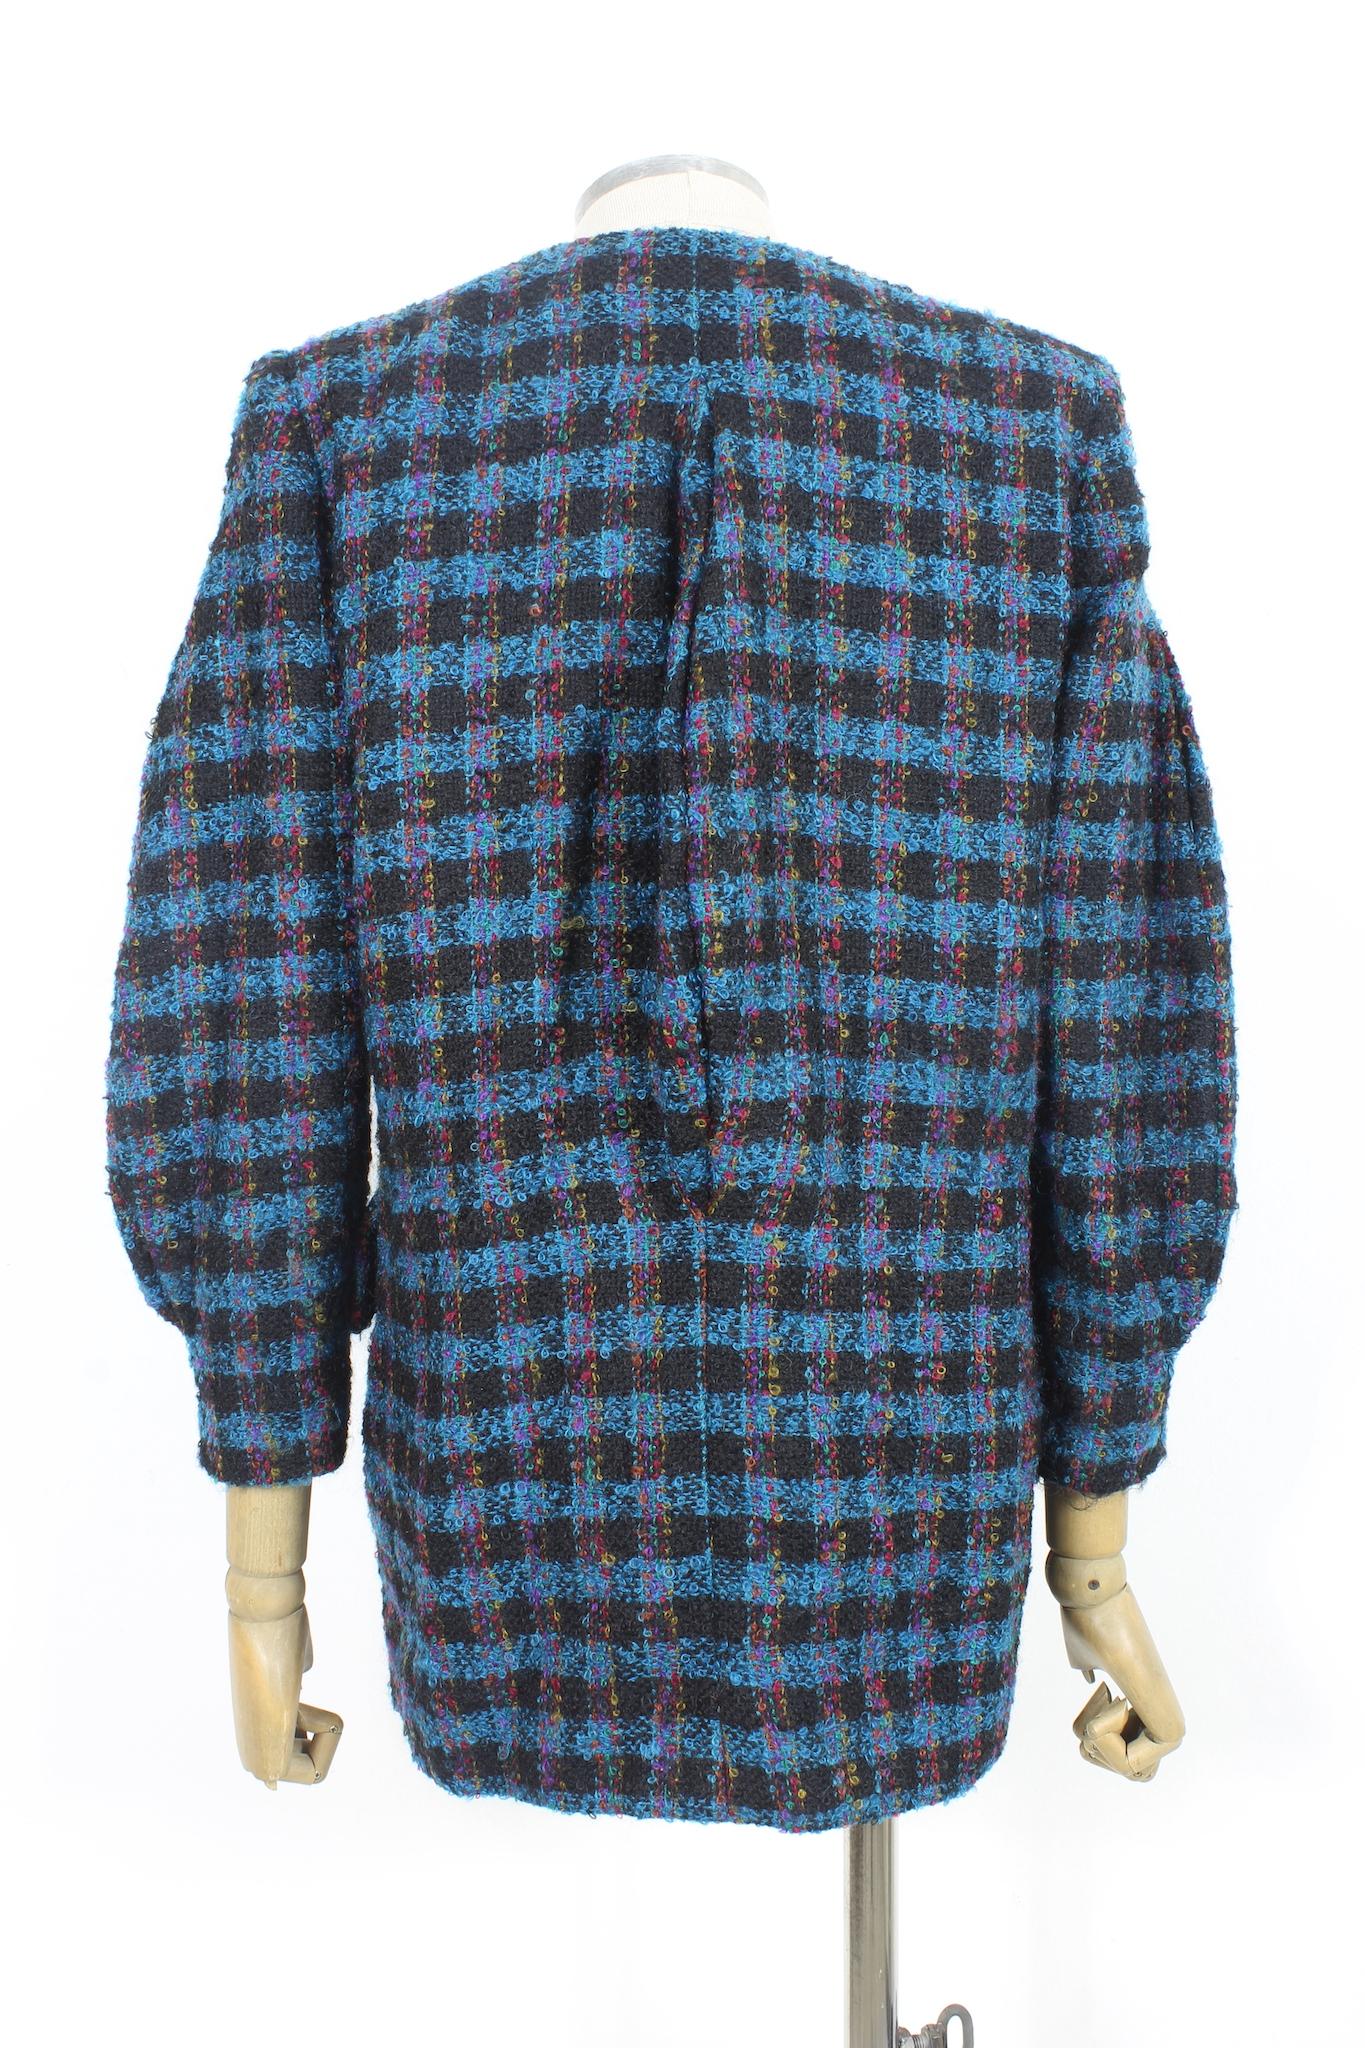 Manteau en boucle Nina Ricci vintage des années 80. Bleu, noir et rouge, motif à carreaux, manches qui se rétrécissent de la largeur vers les poignets. 100% laine, doublé à l'intérieur. Fabriqué en France.

Taille : 42 It 8 Us 10 Uk 38 Fr

Epaule :